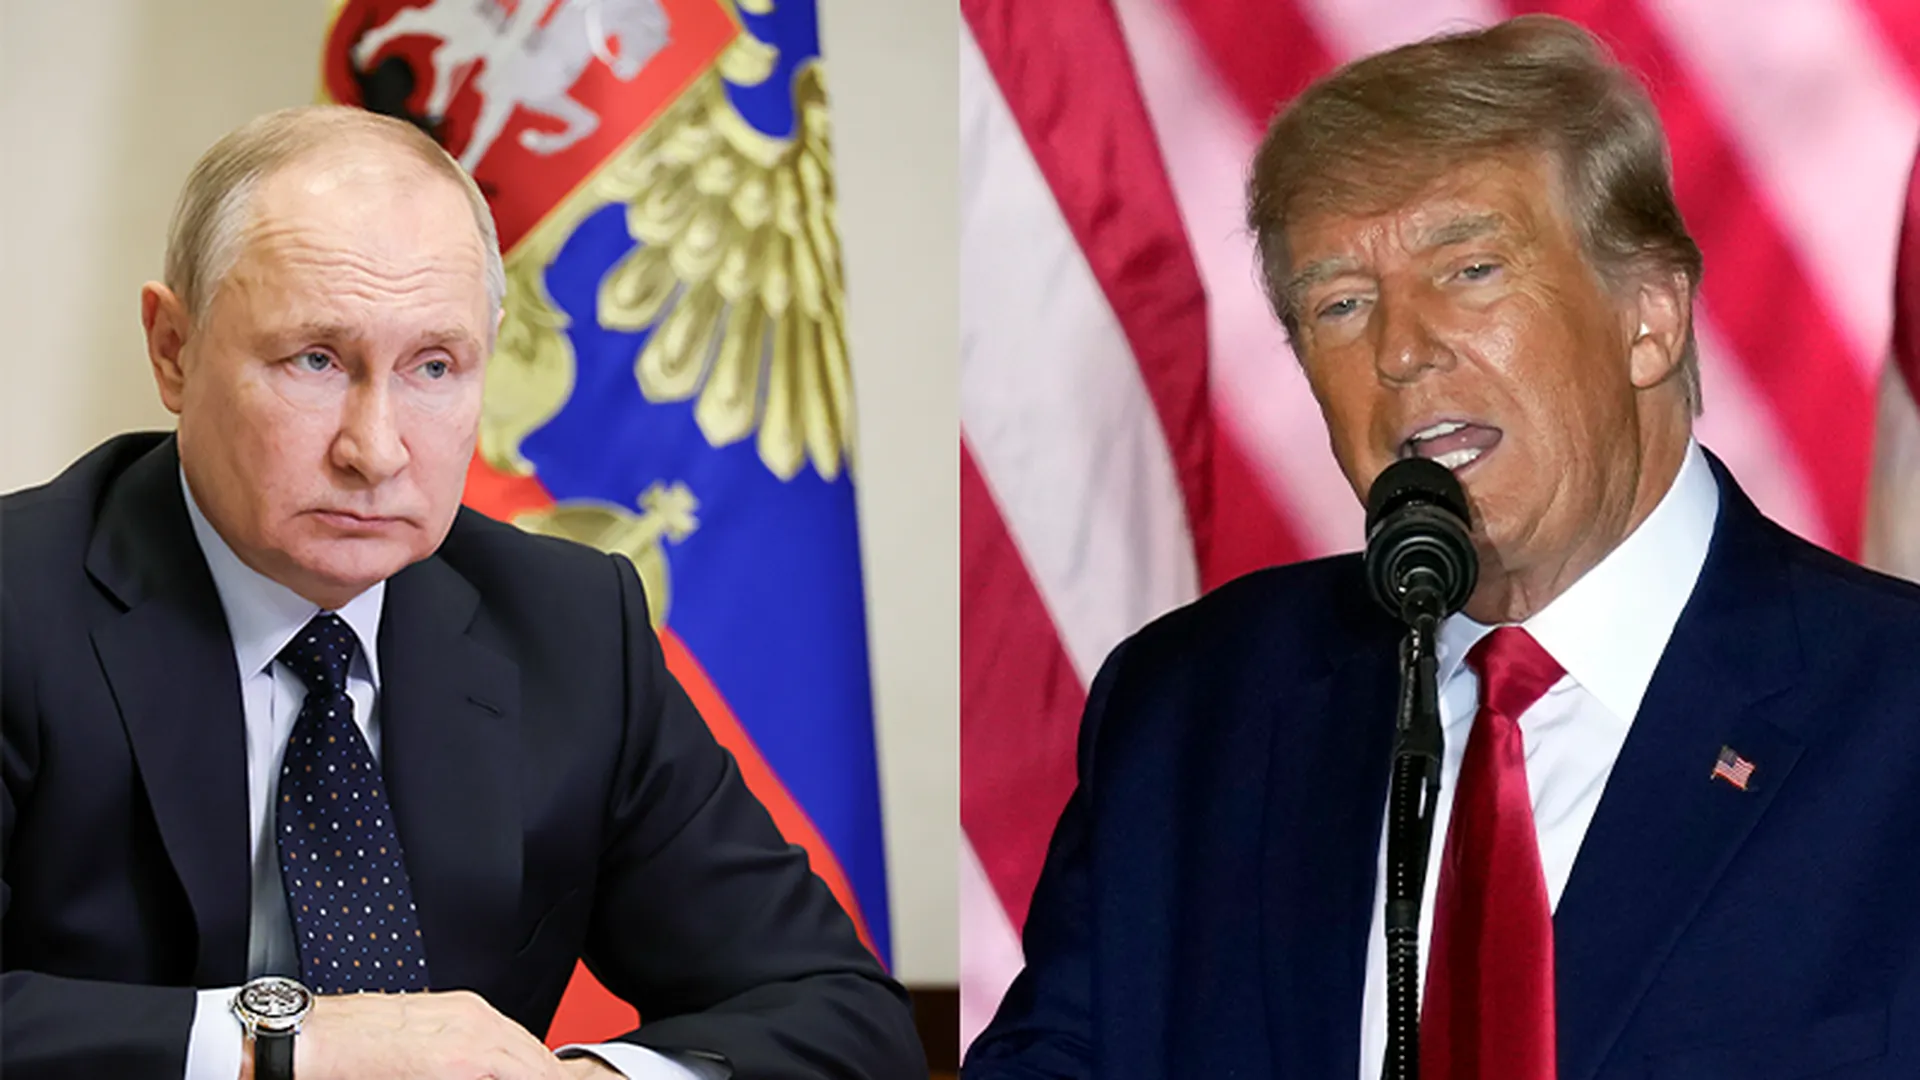 Политолог рассказал об идеологической близости Путина и Трампа